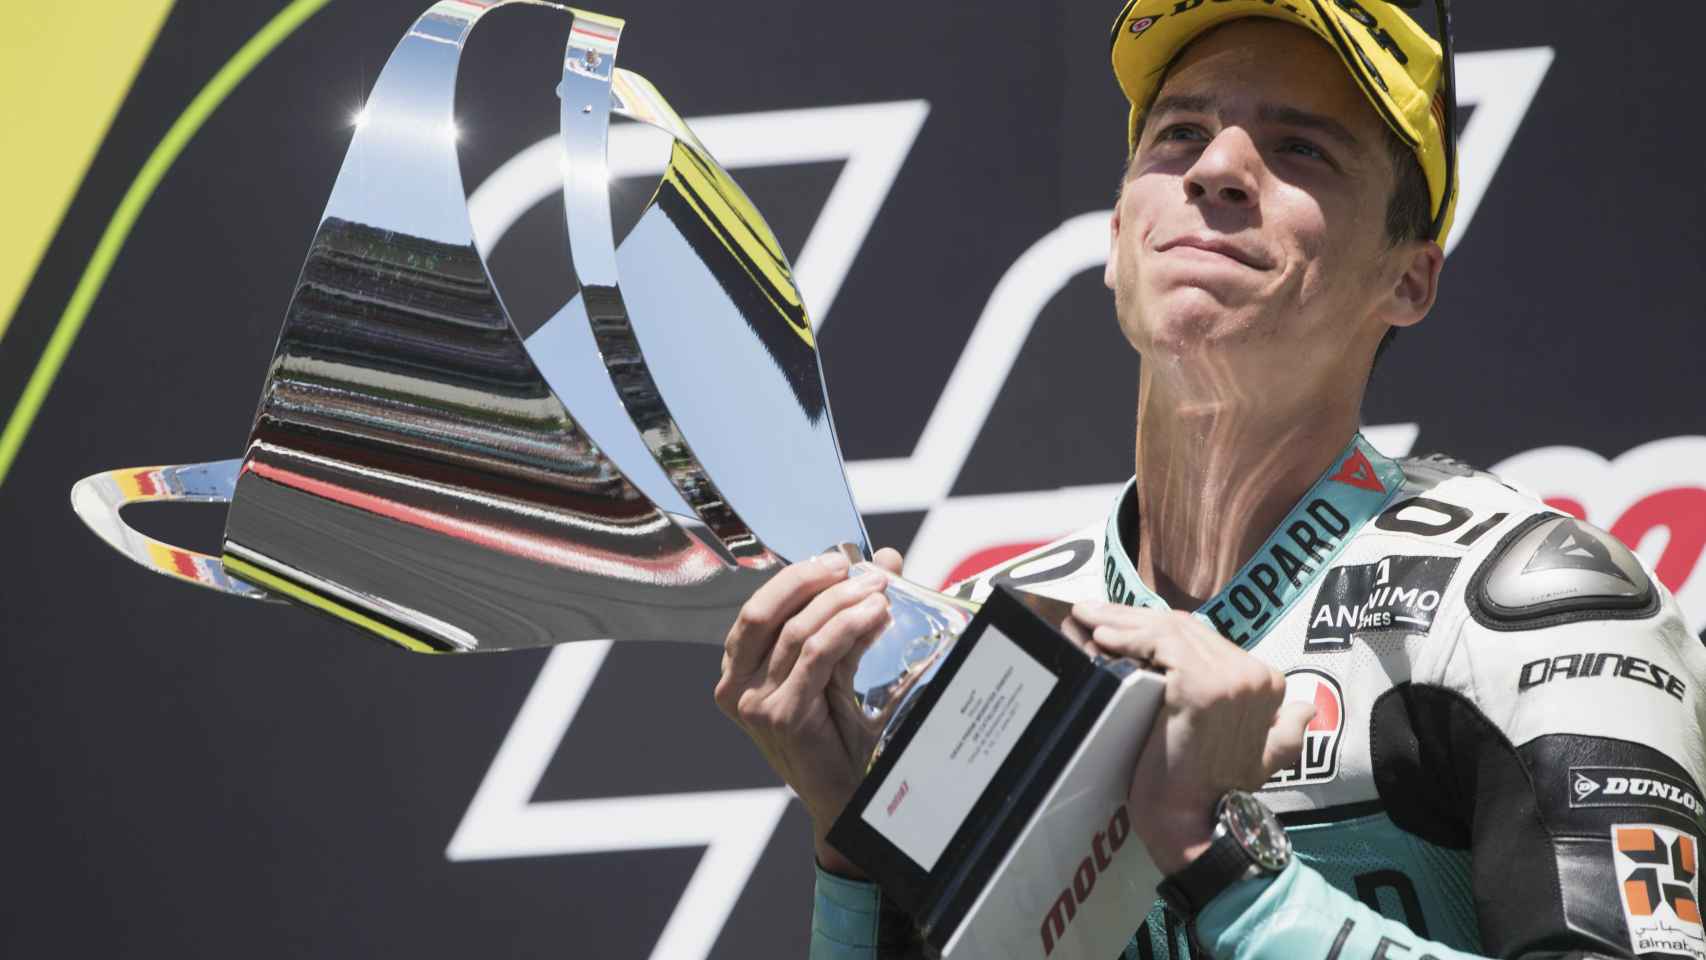 El piloto español levanta el trofeo de ganador del GP de Cataluña.